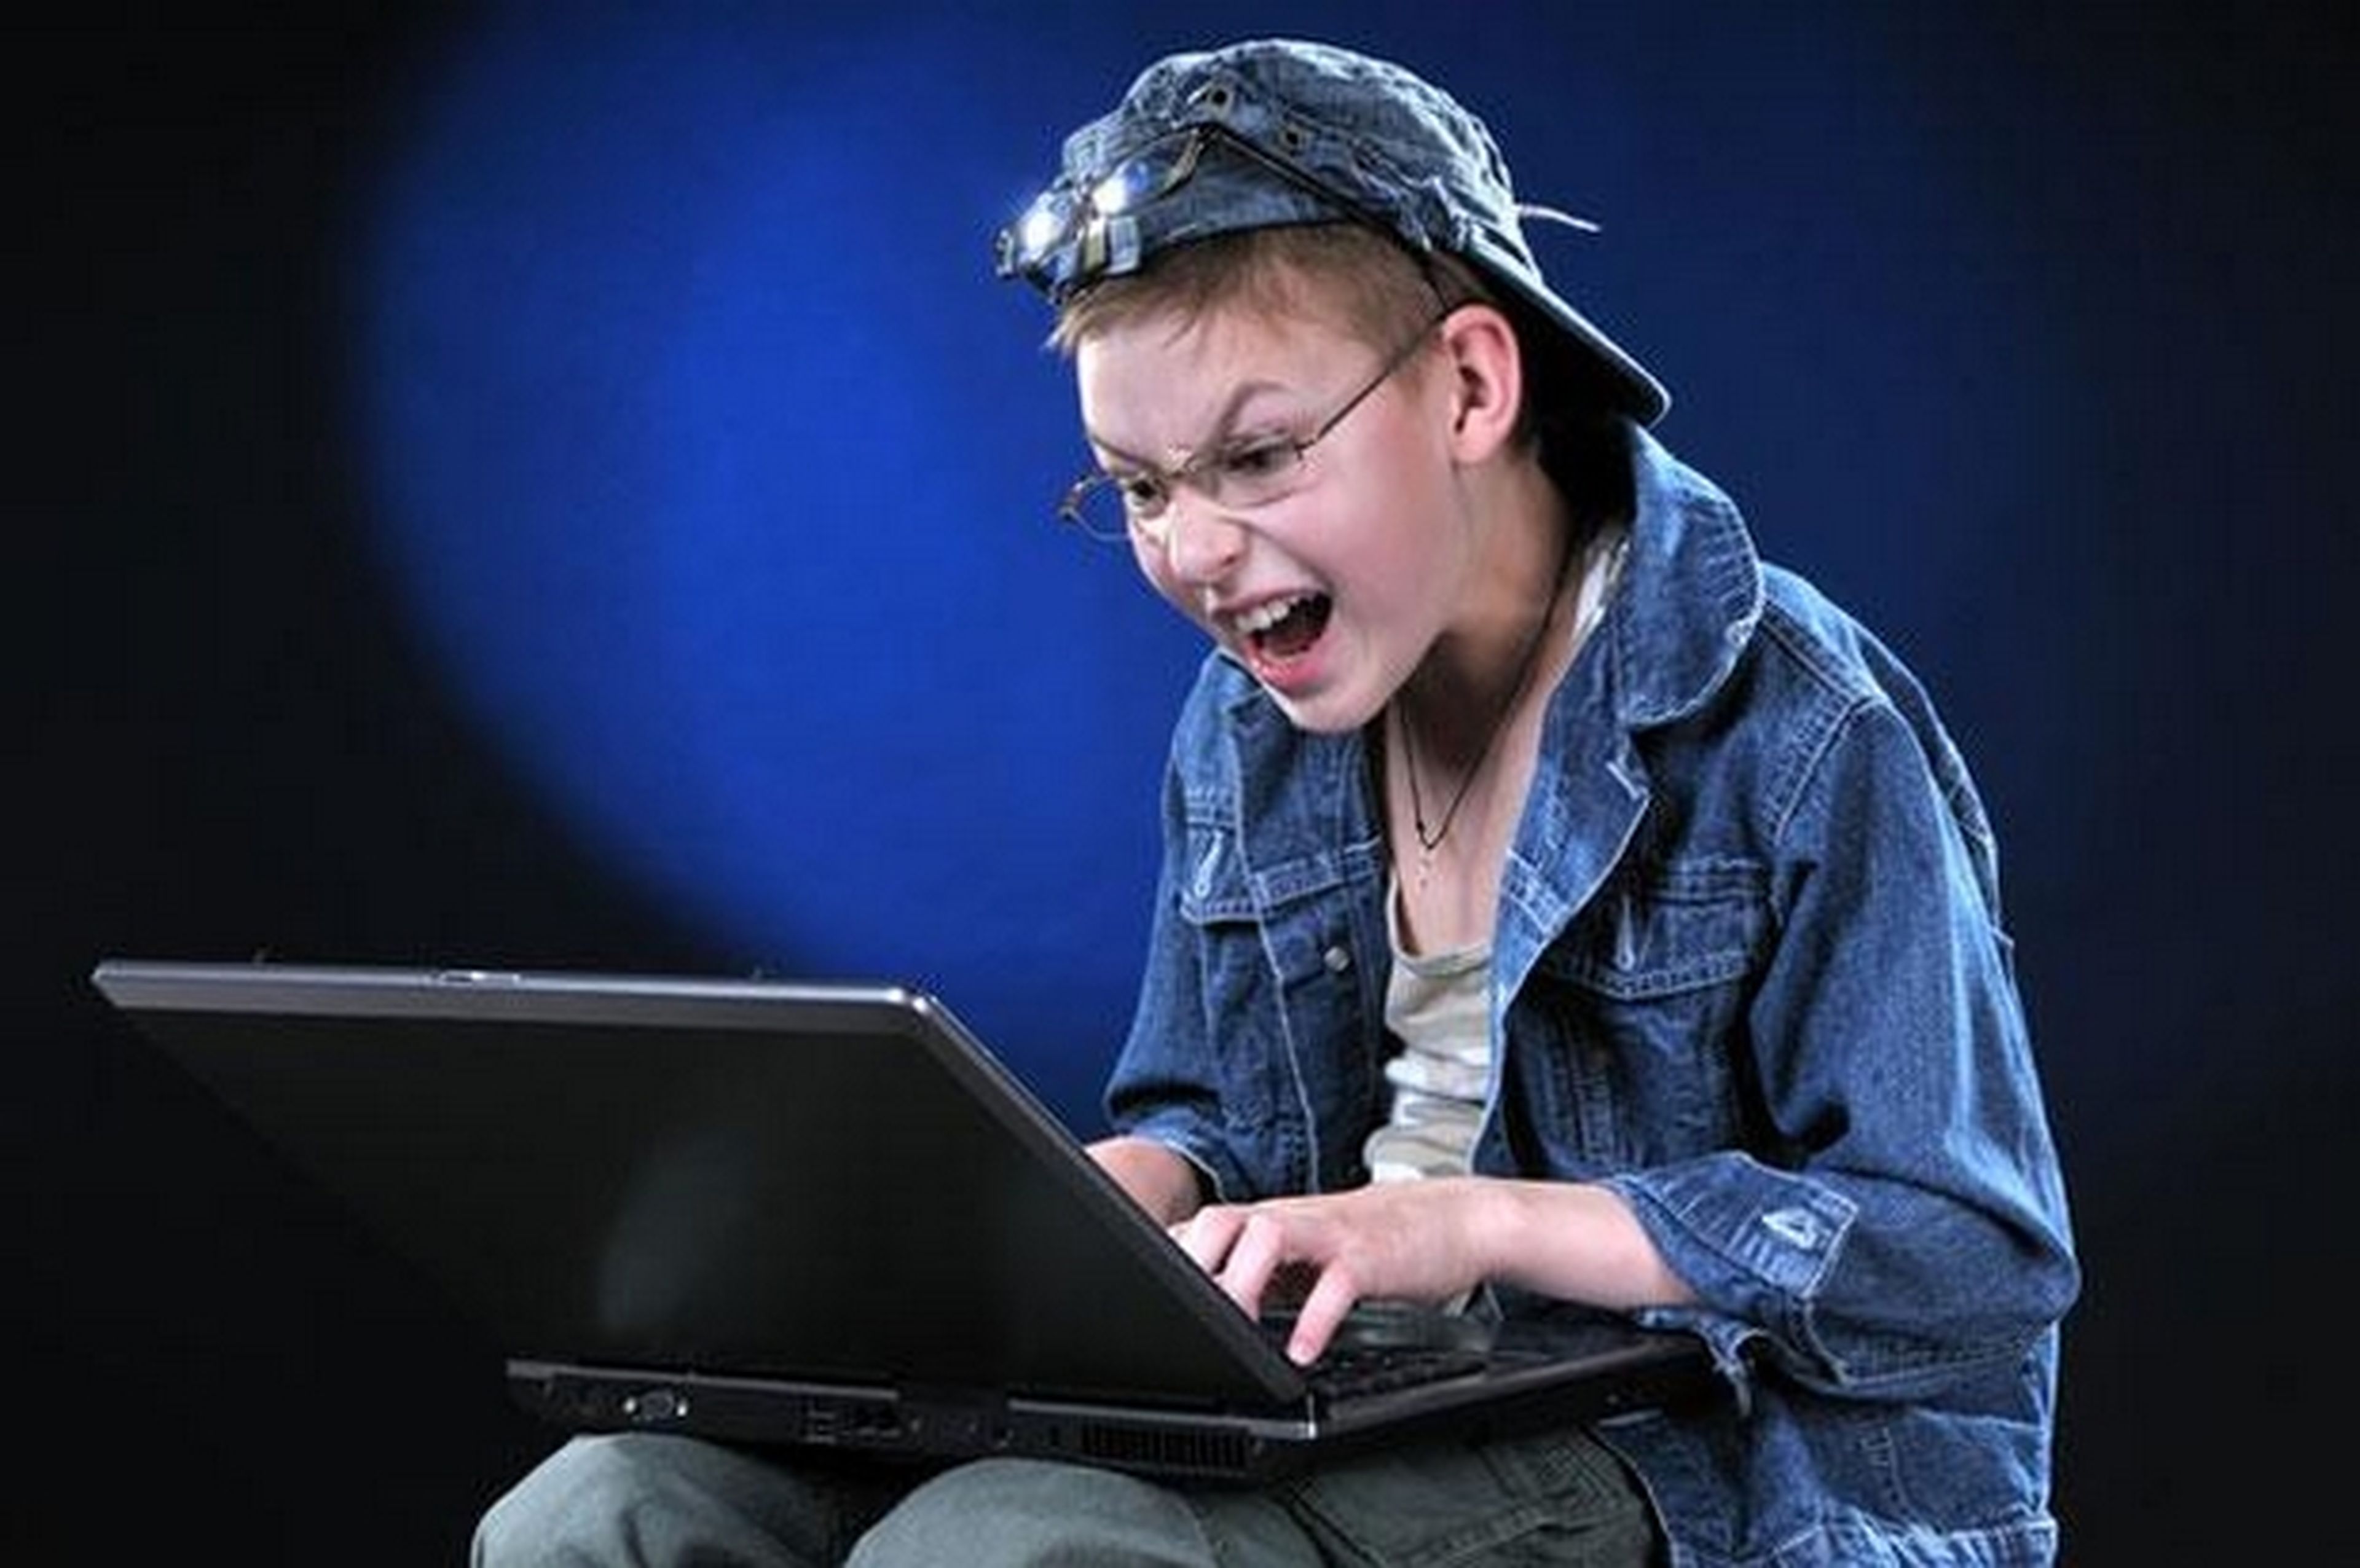 Niño de 12 años, declarado culpable de hackear webs del gobierno para Anonymous, a cambio de videojuegos